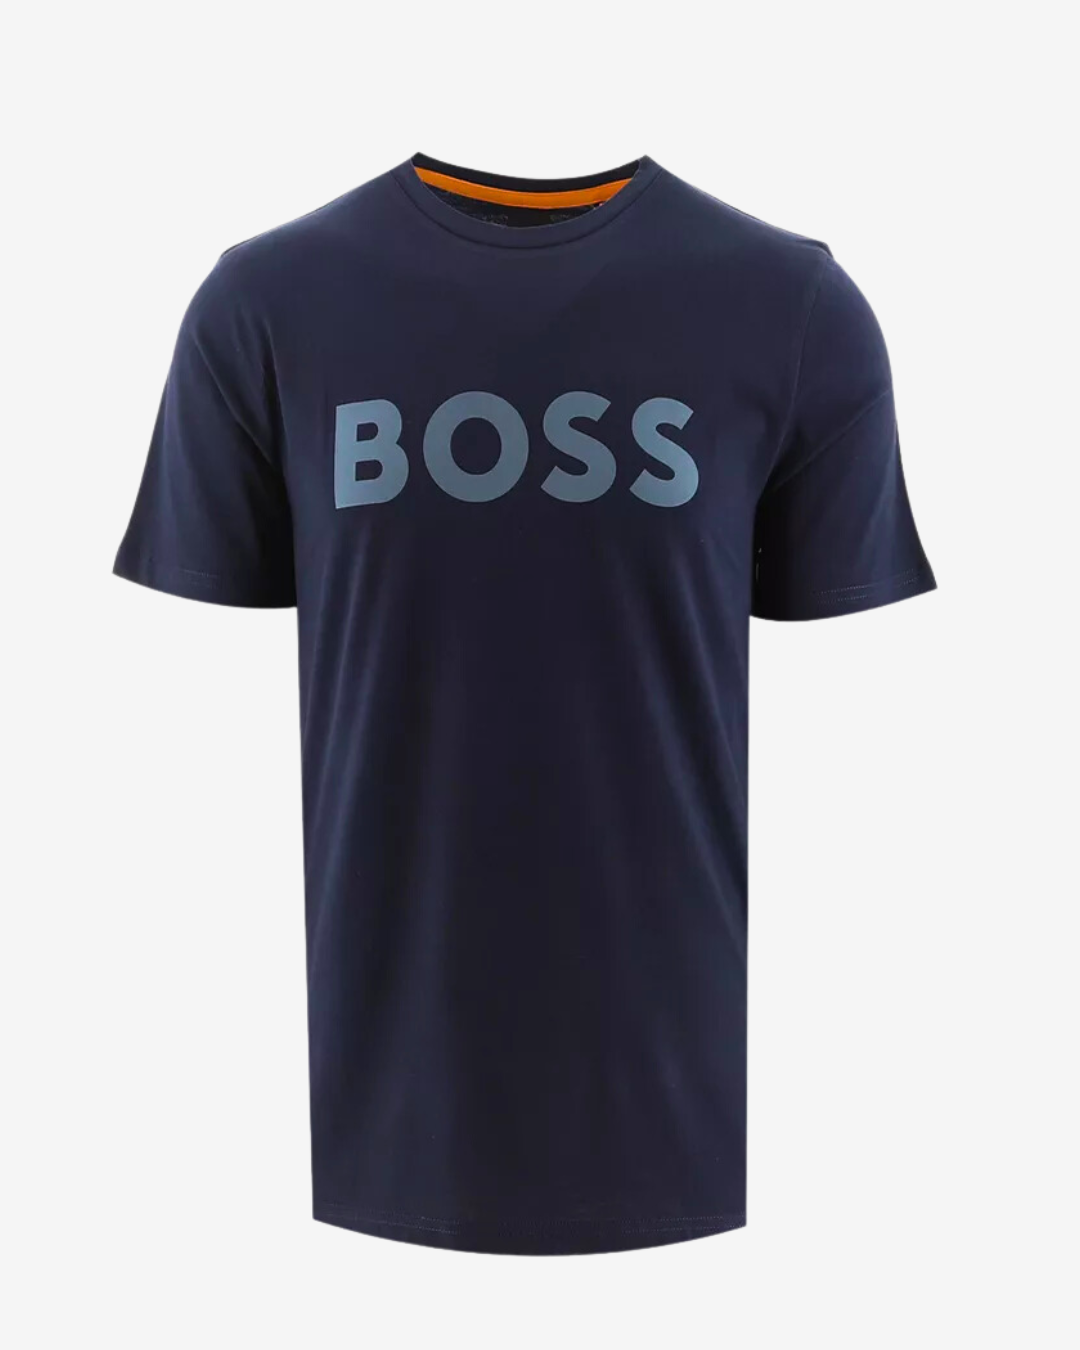 Billede af Hugo Boss Thinking logo t-shirt - Navy / Blå - Str. S - Modish.dk